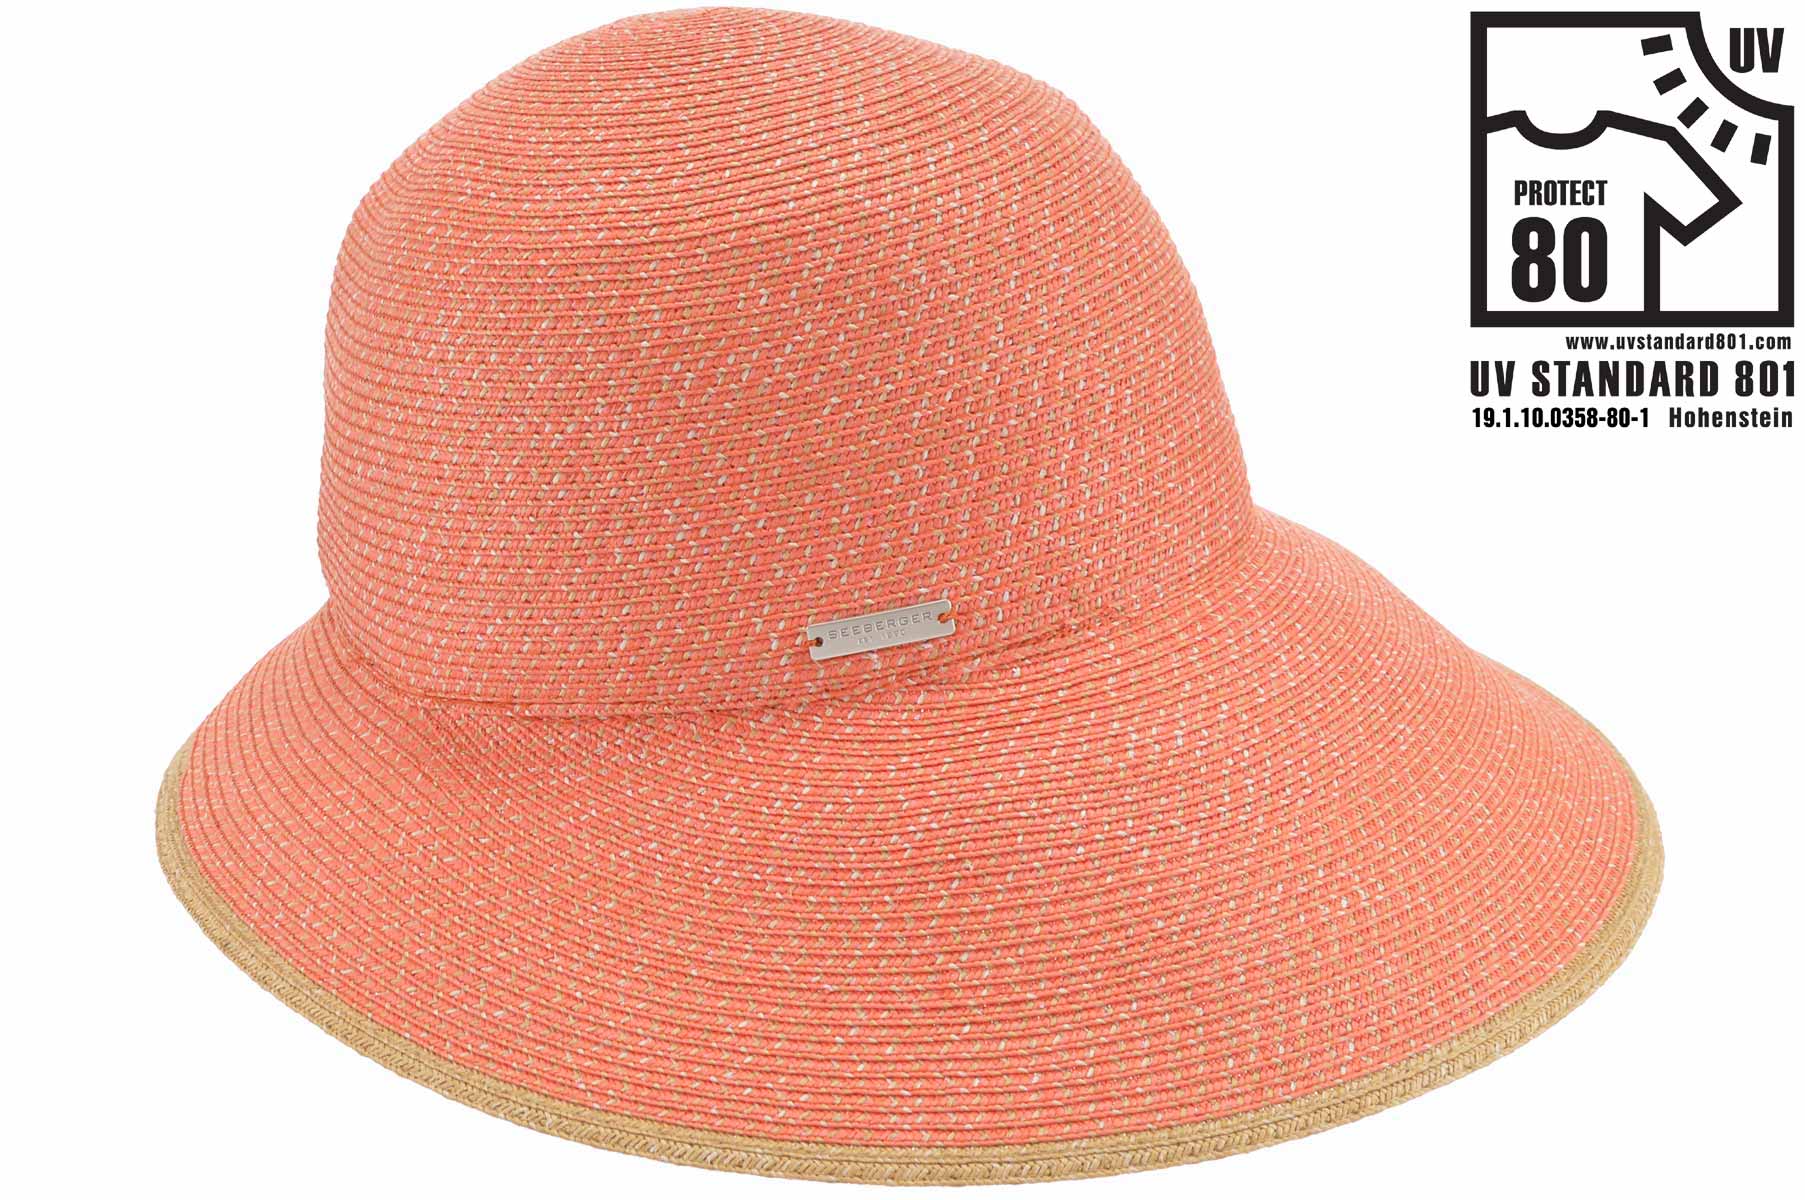 SEEBERGER women straw hat »paper braid cap 55009-0« online kaufen bei  SEEBERGER HATS